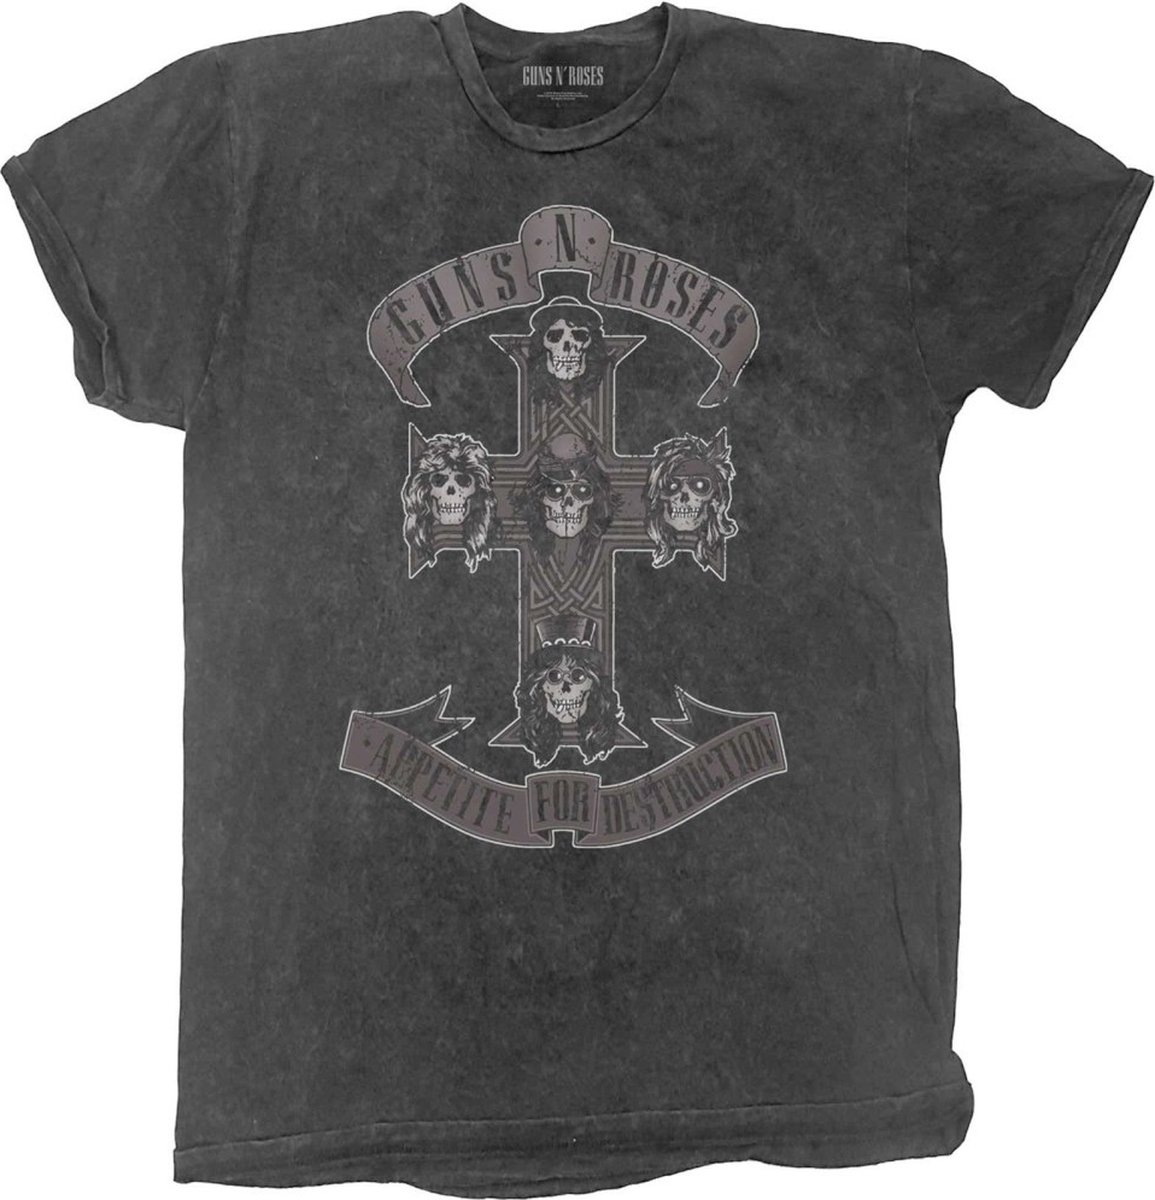 Guns N' Roses - Monochrome Cross Kinder T-shirt - Kids tm 4 jaar - Zwart